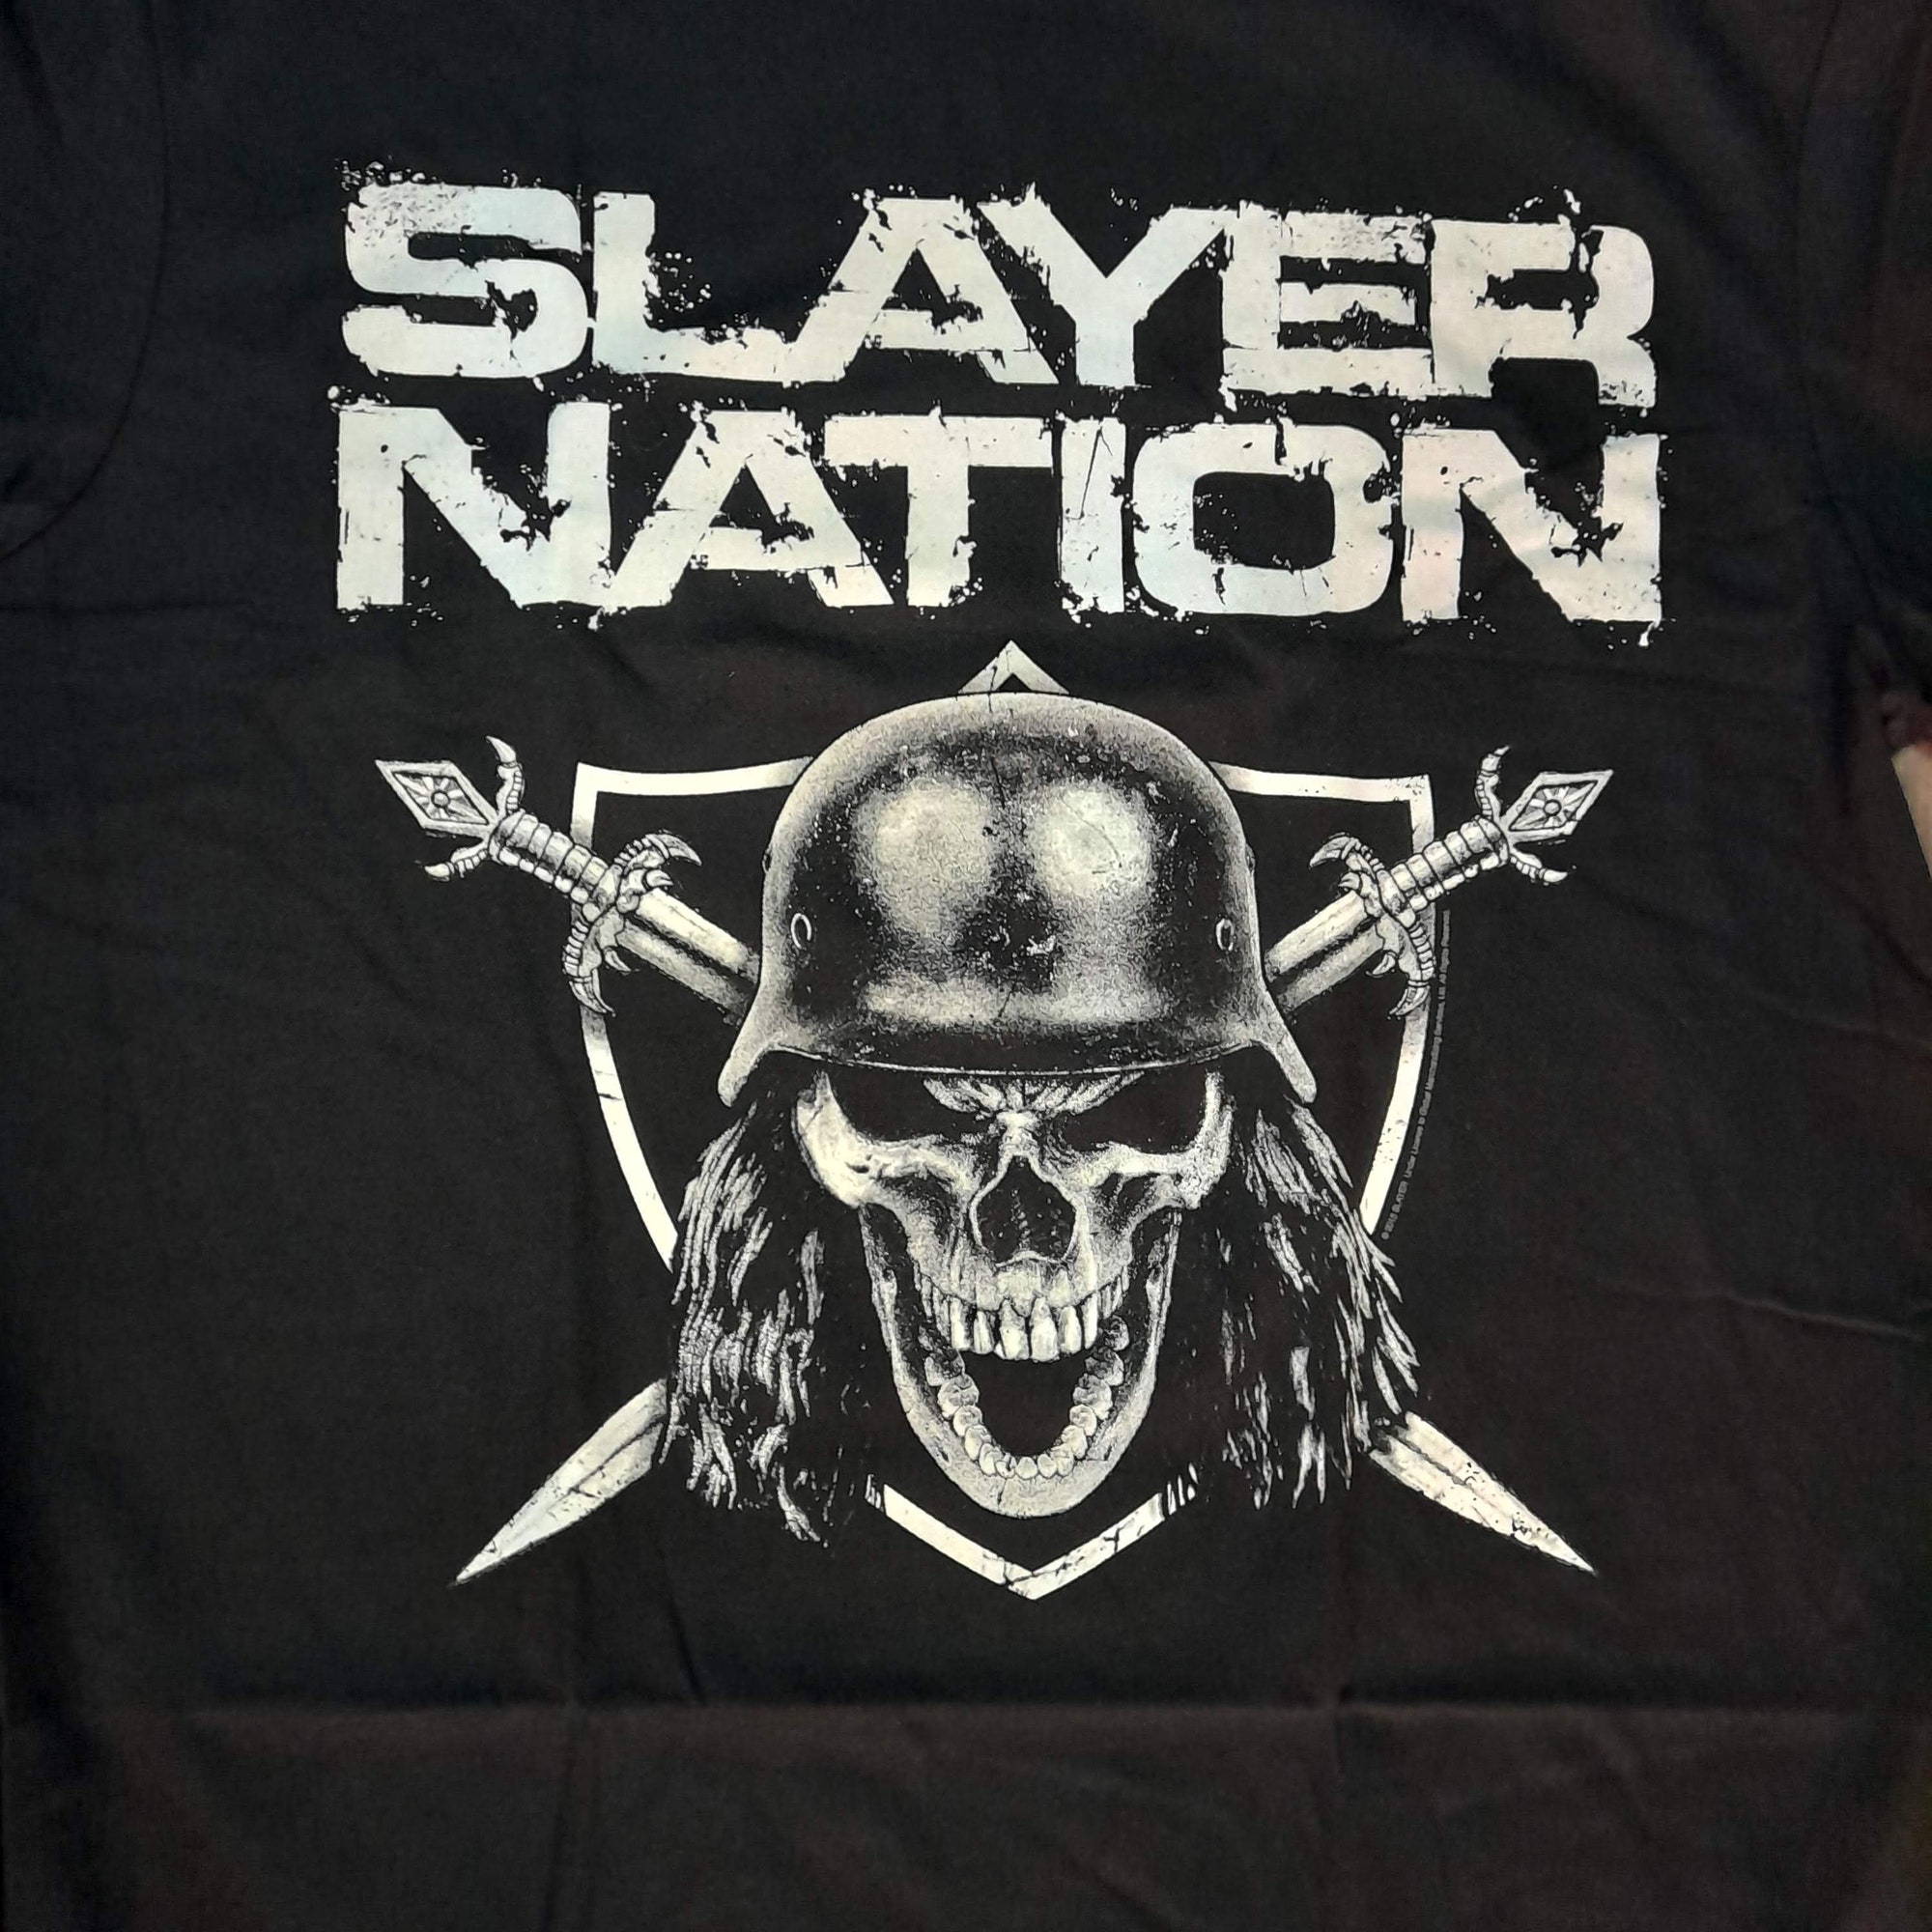 Slayer - Slayer Nation - Slayer World Tour 2015 - Thrash Metal